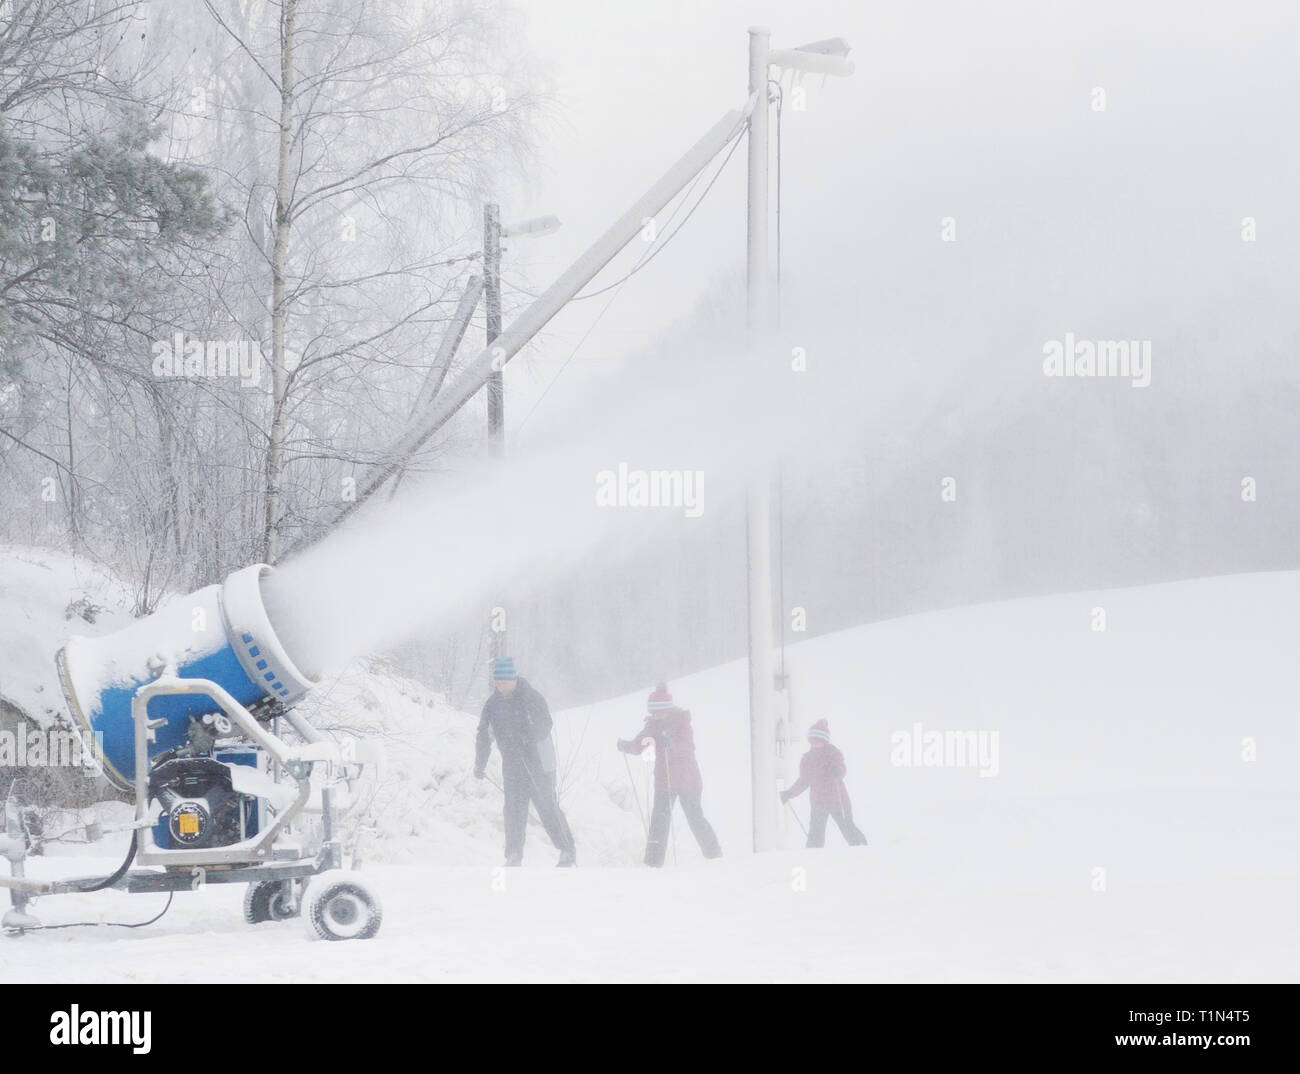 MJÖLBY 2016-01-05 Skidåkare, ich skidspår, Som åker förbi snökanon ich volle gång. Foto Jeppe Gustafsson Stockfoto